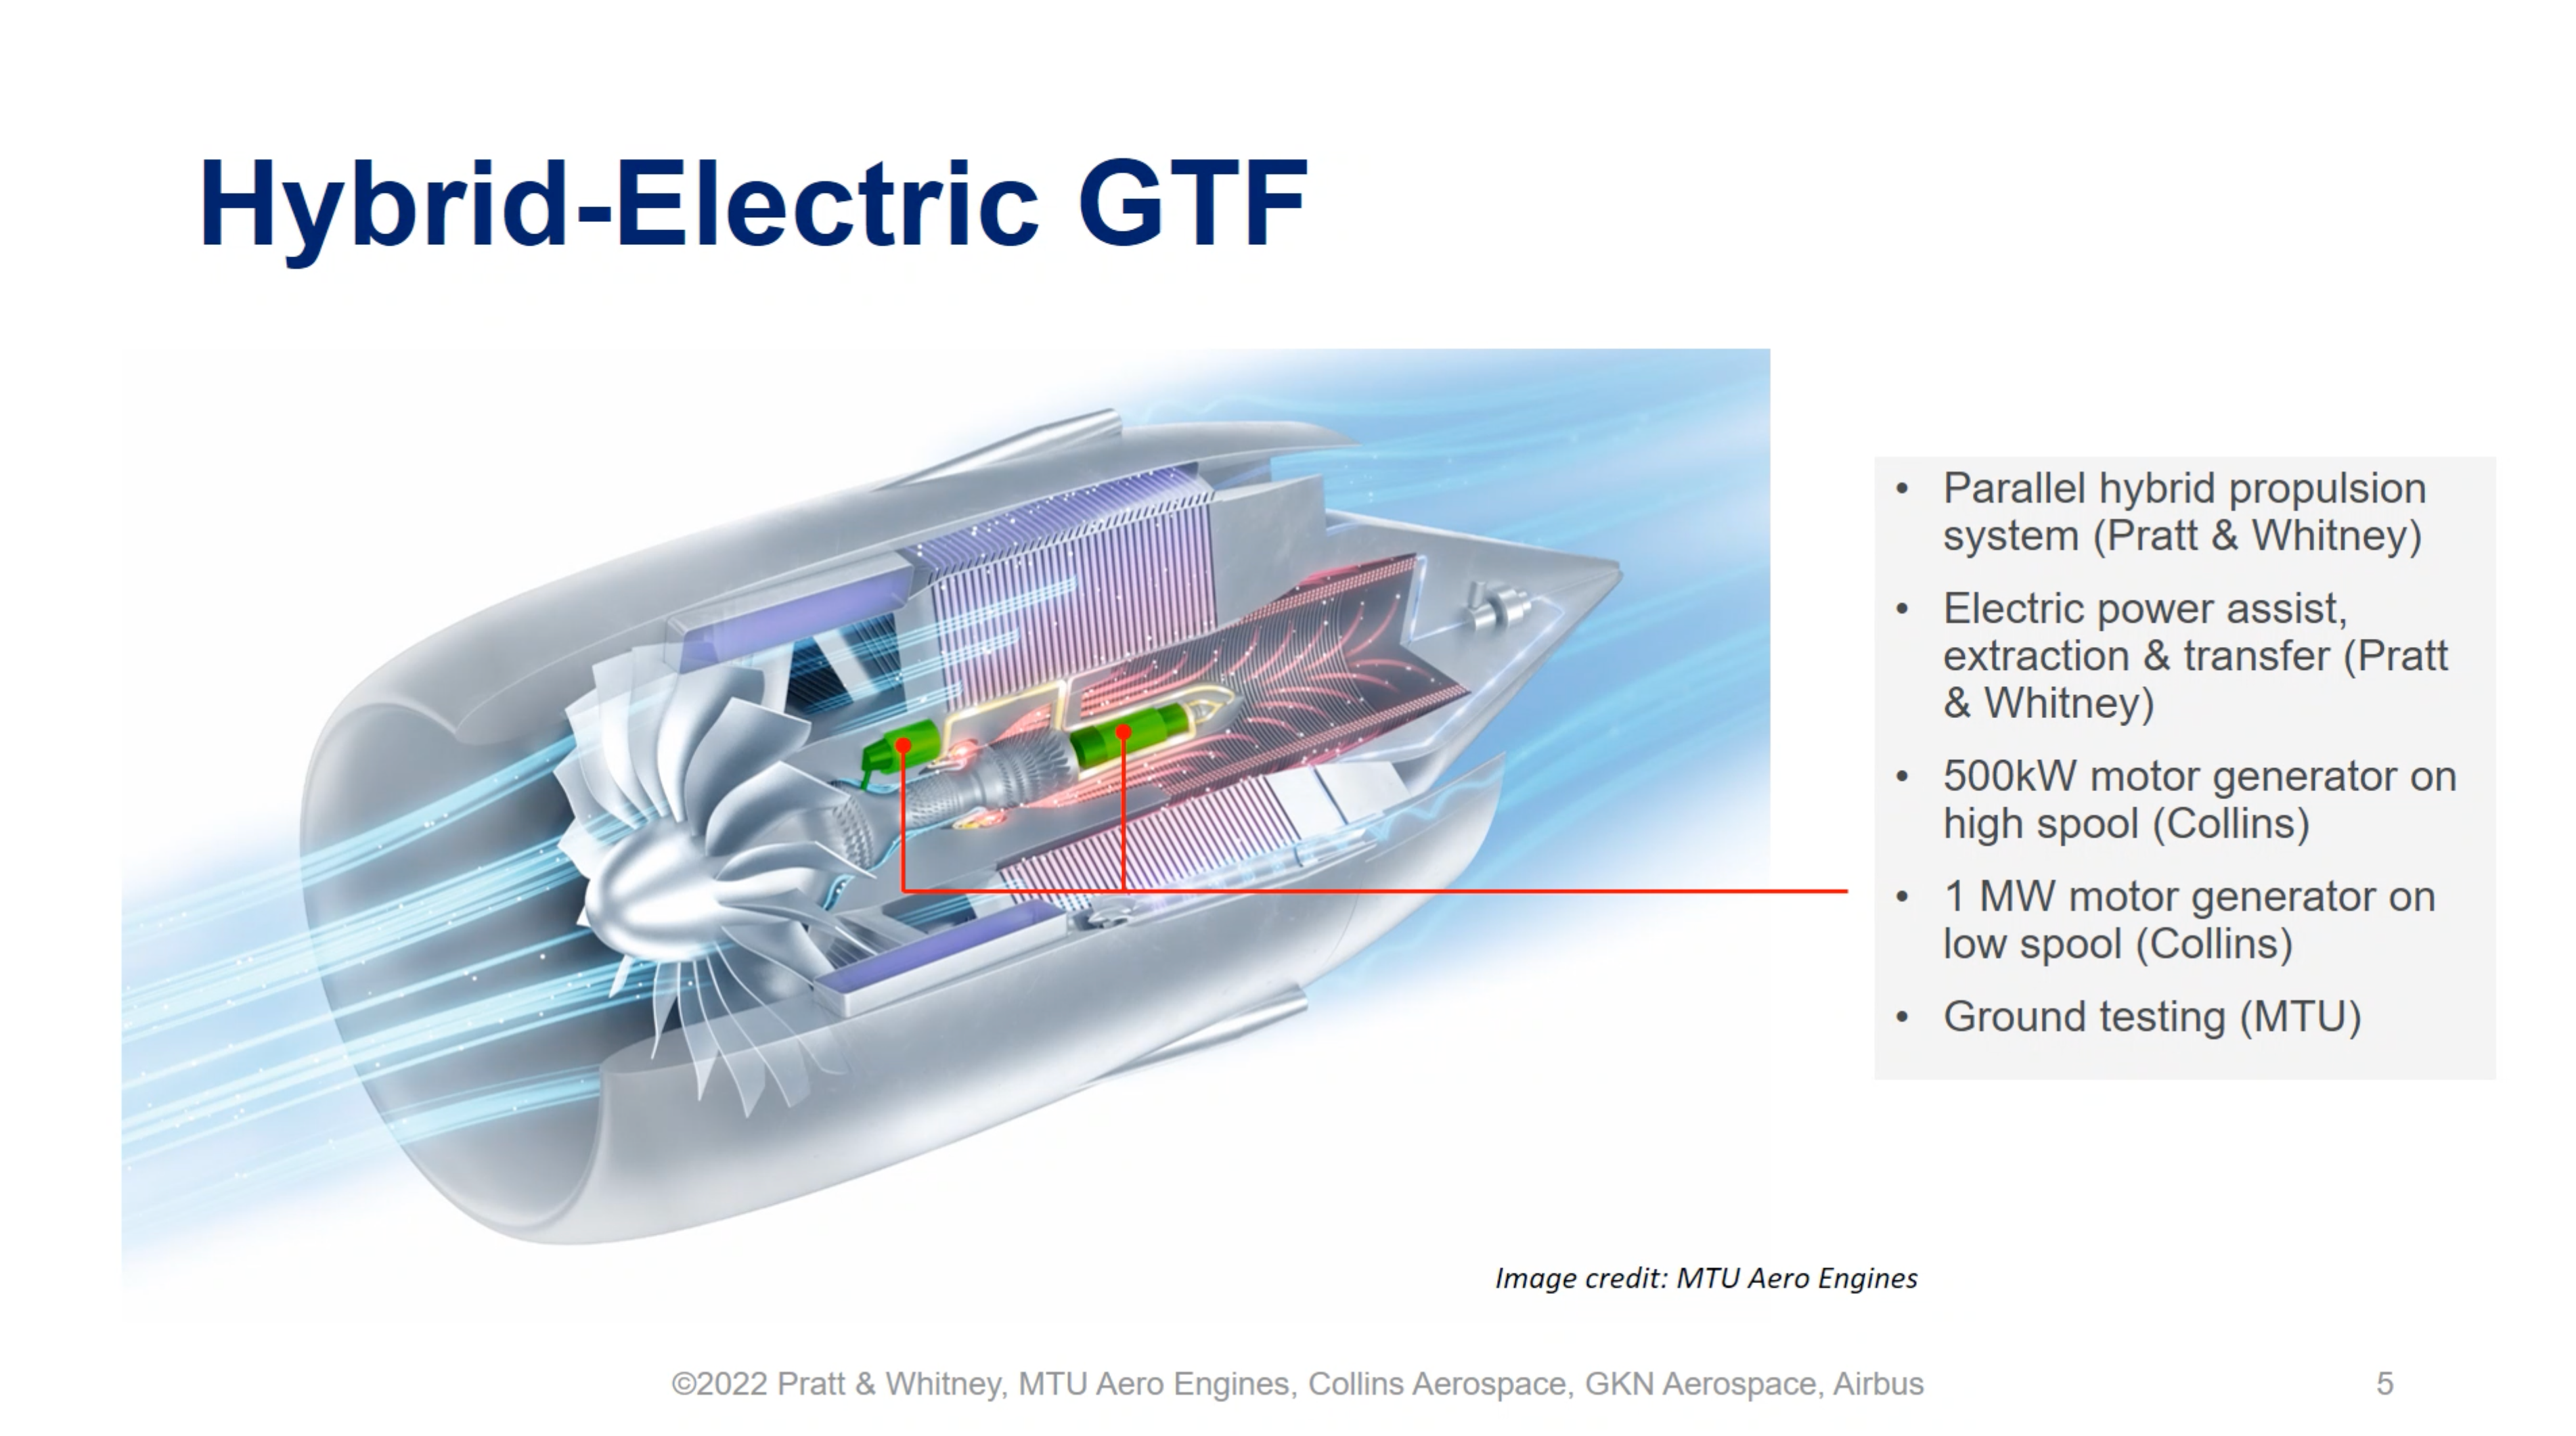 hybrid electric GTF engine